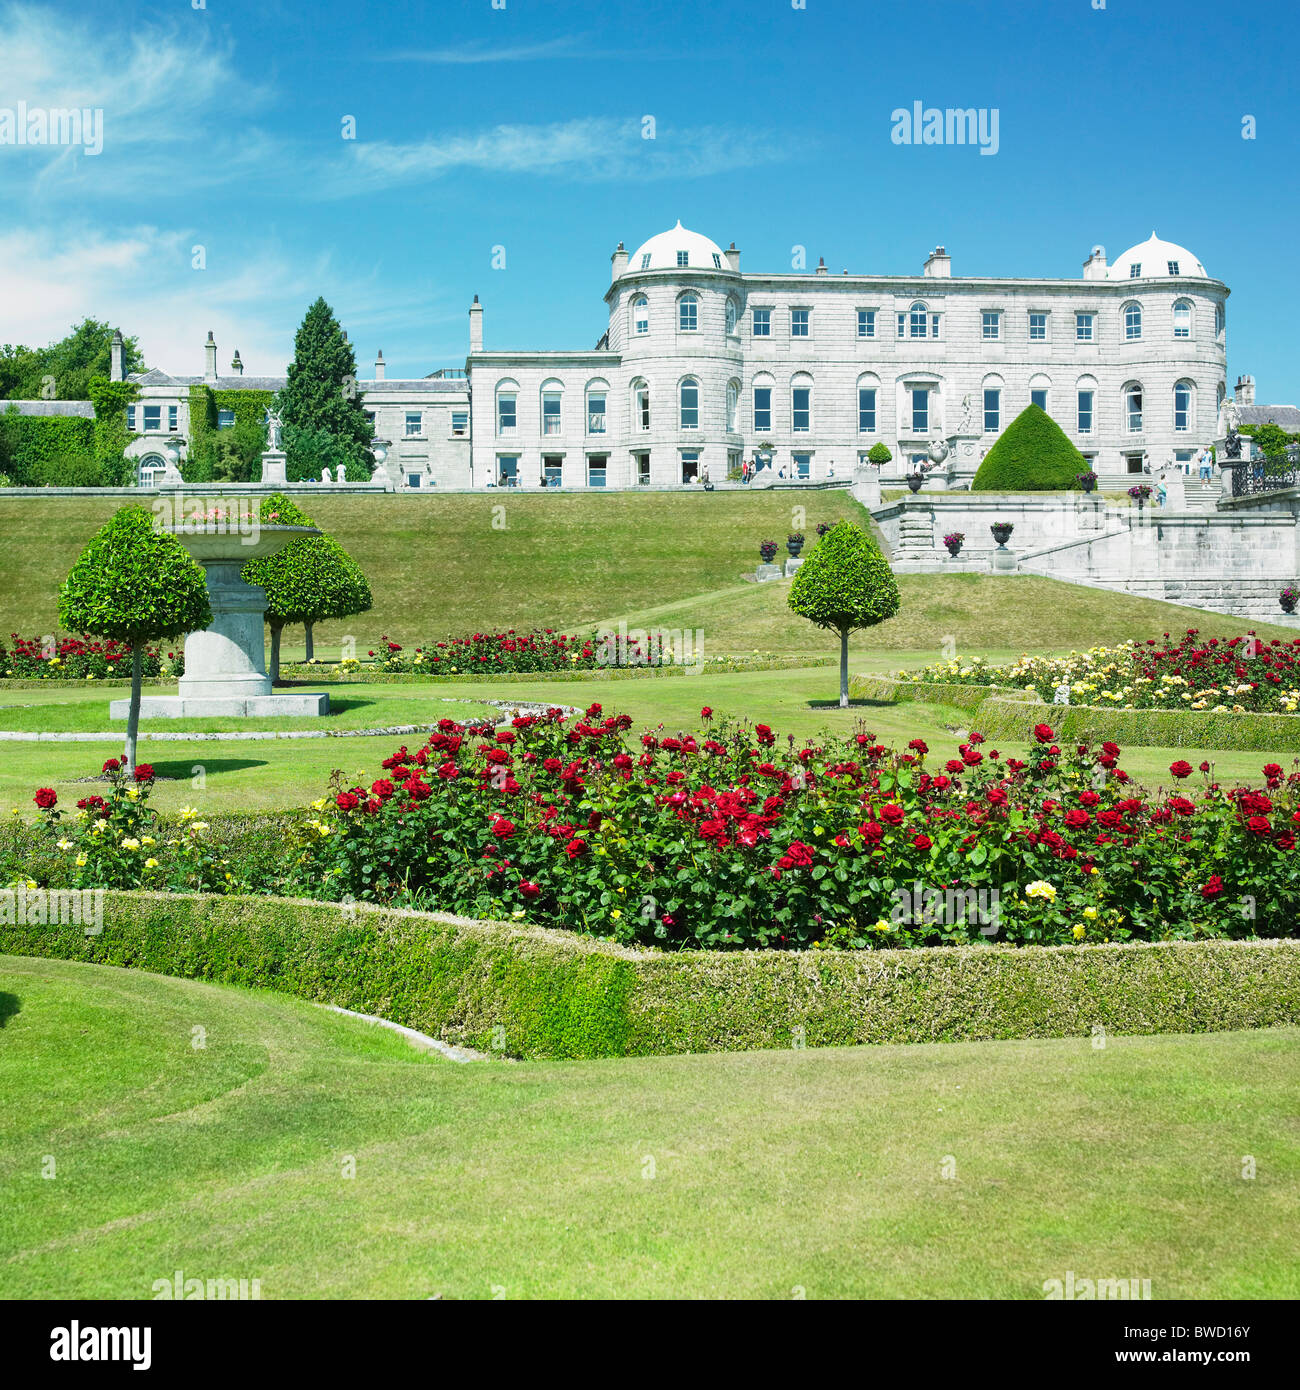 Powerscourt House with gardens, County Wicklow, Ireland Stock Photo